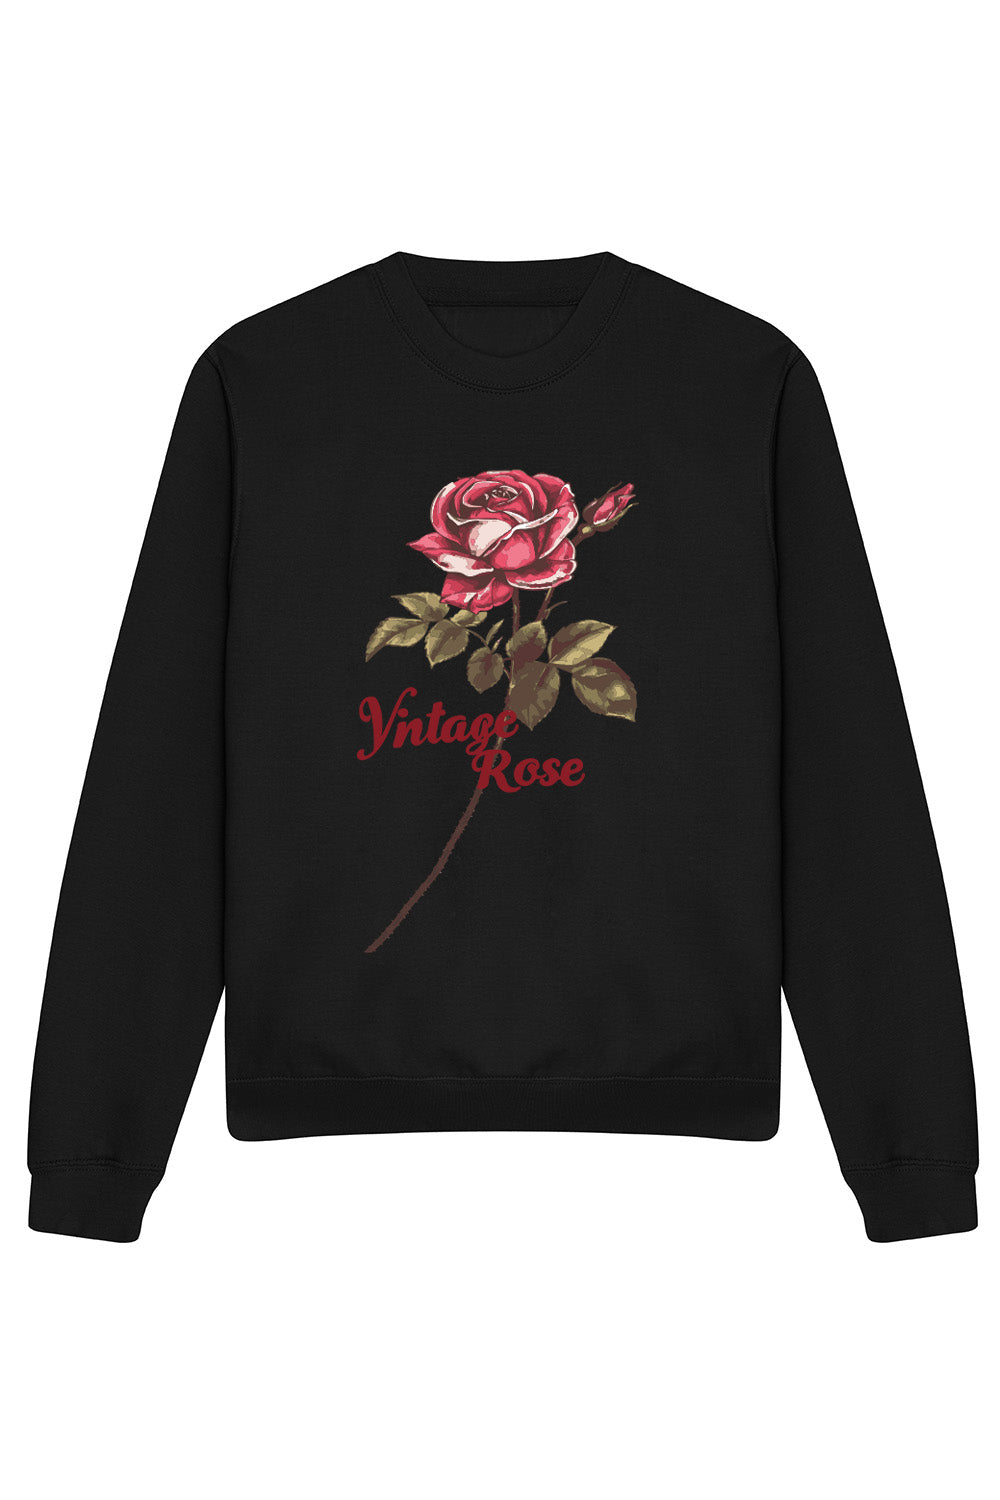 Vintage Rose Sweatshirt In Black (Custom Pack)